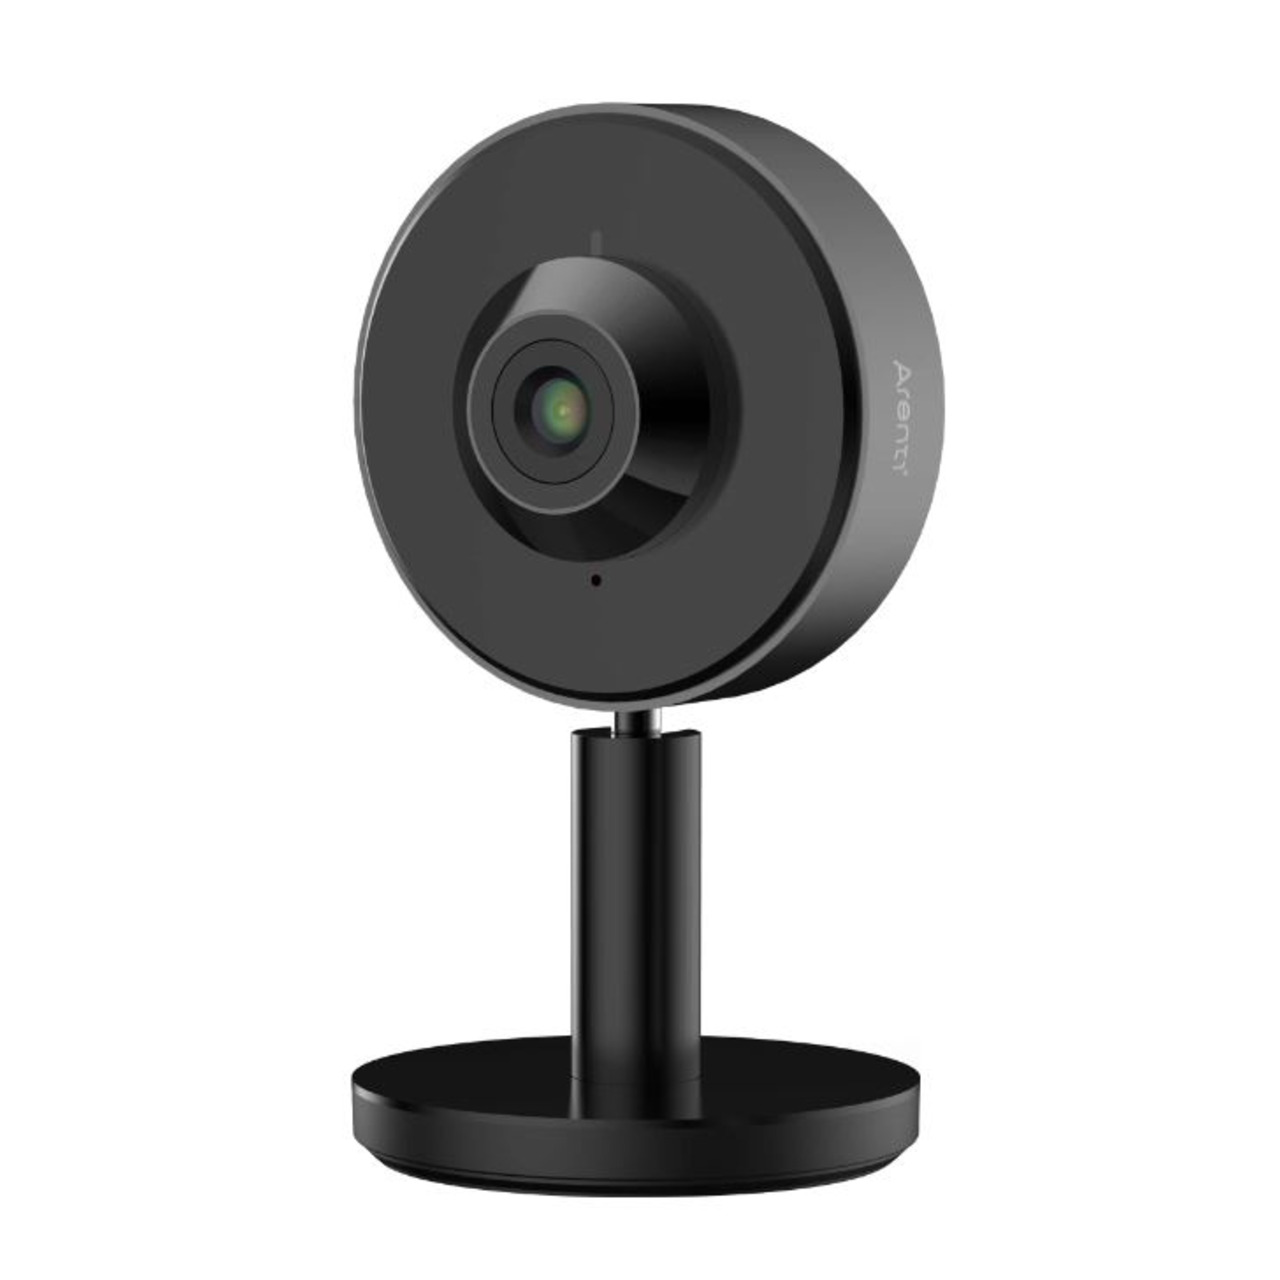 Arenti WLAN-Indoor-Überwachungskamera INDOOR1- 2K-Auflösung- App- Amazon Alexa unter Sicherheitstechnik